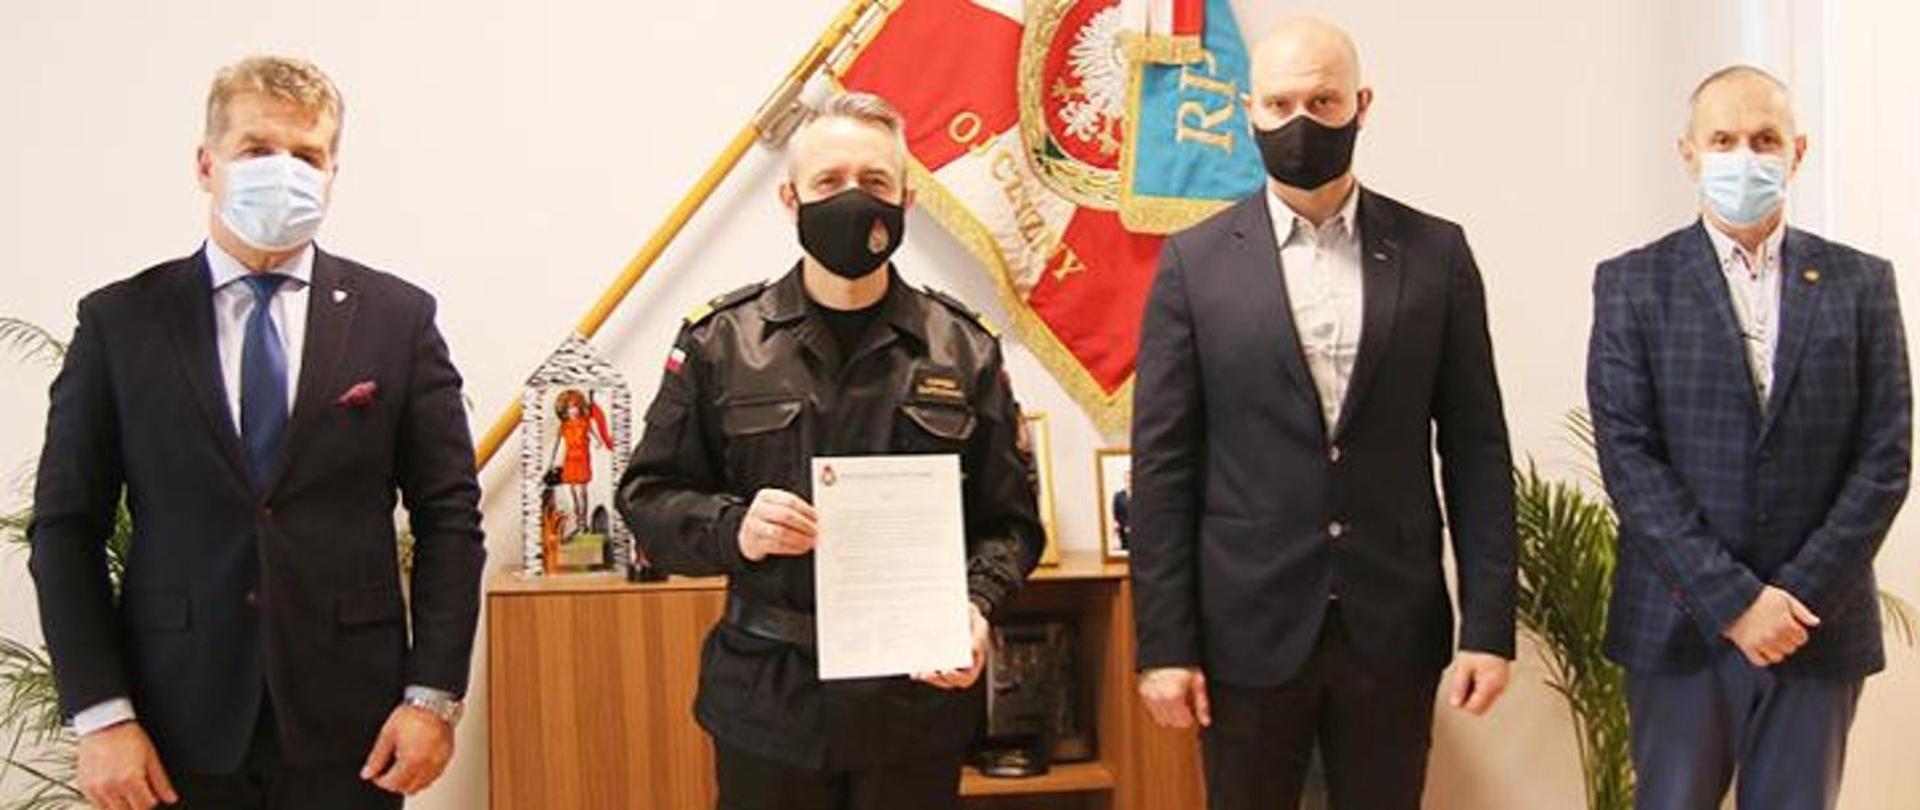  Komendant Główny Państwowej Straży Pożarnej nadbryg. Andrzej Bartkowiak, wraz z przedstawicielami Związków Zawodowych działających w PSP, apelują o oddawanie osocza